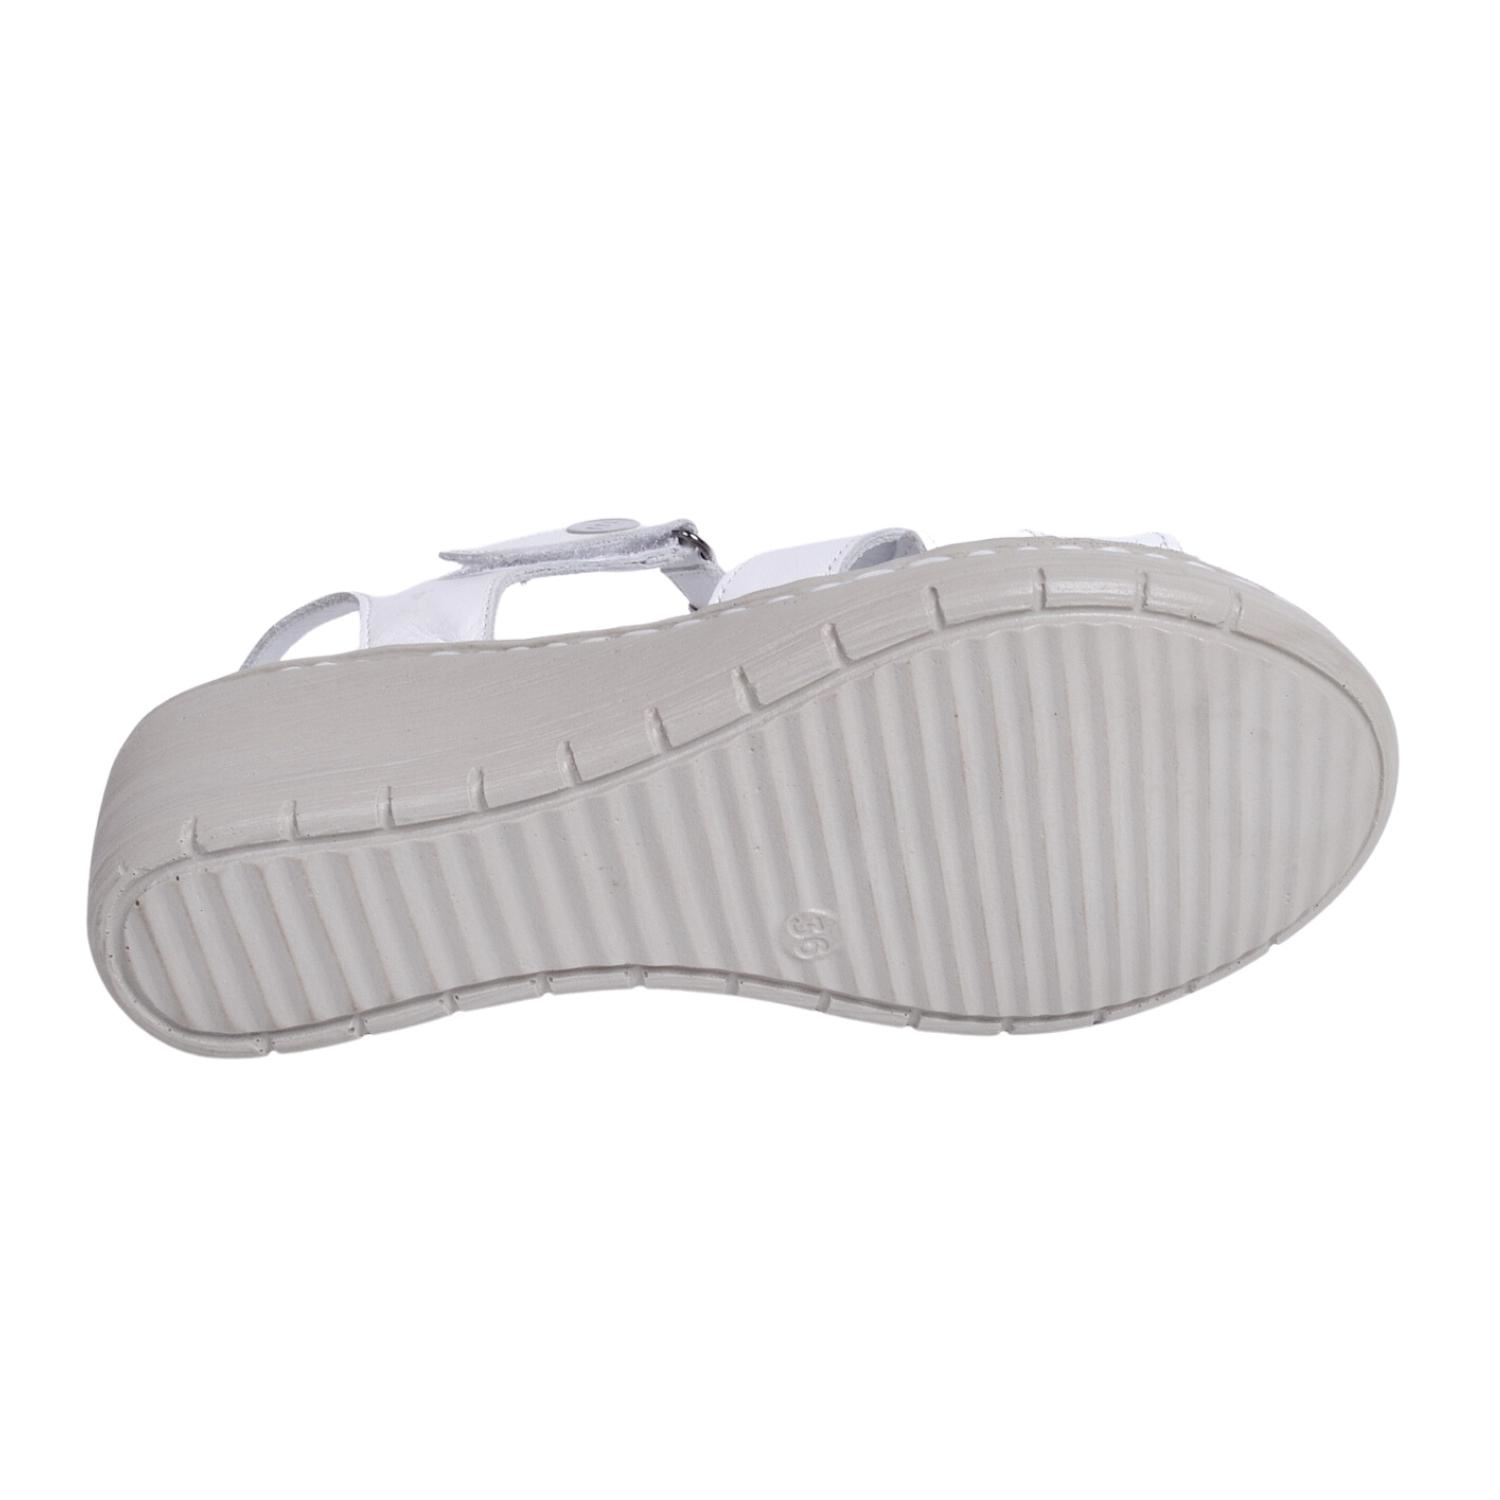 Mammamia D23YS-1045 Kadın Beyaz Deri Sandalet